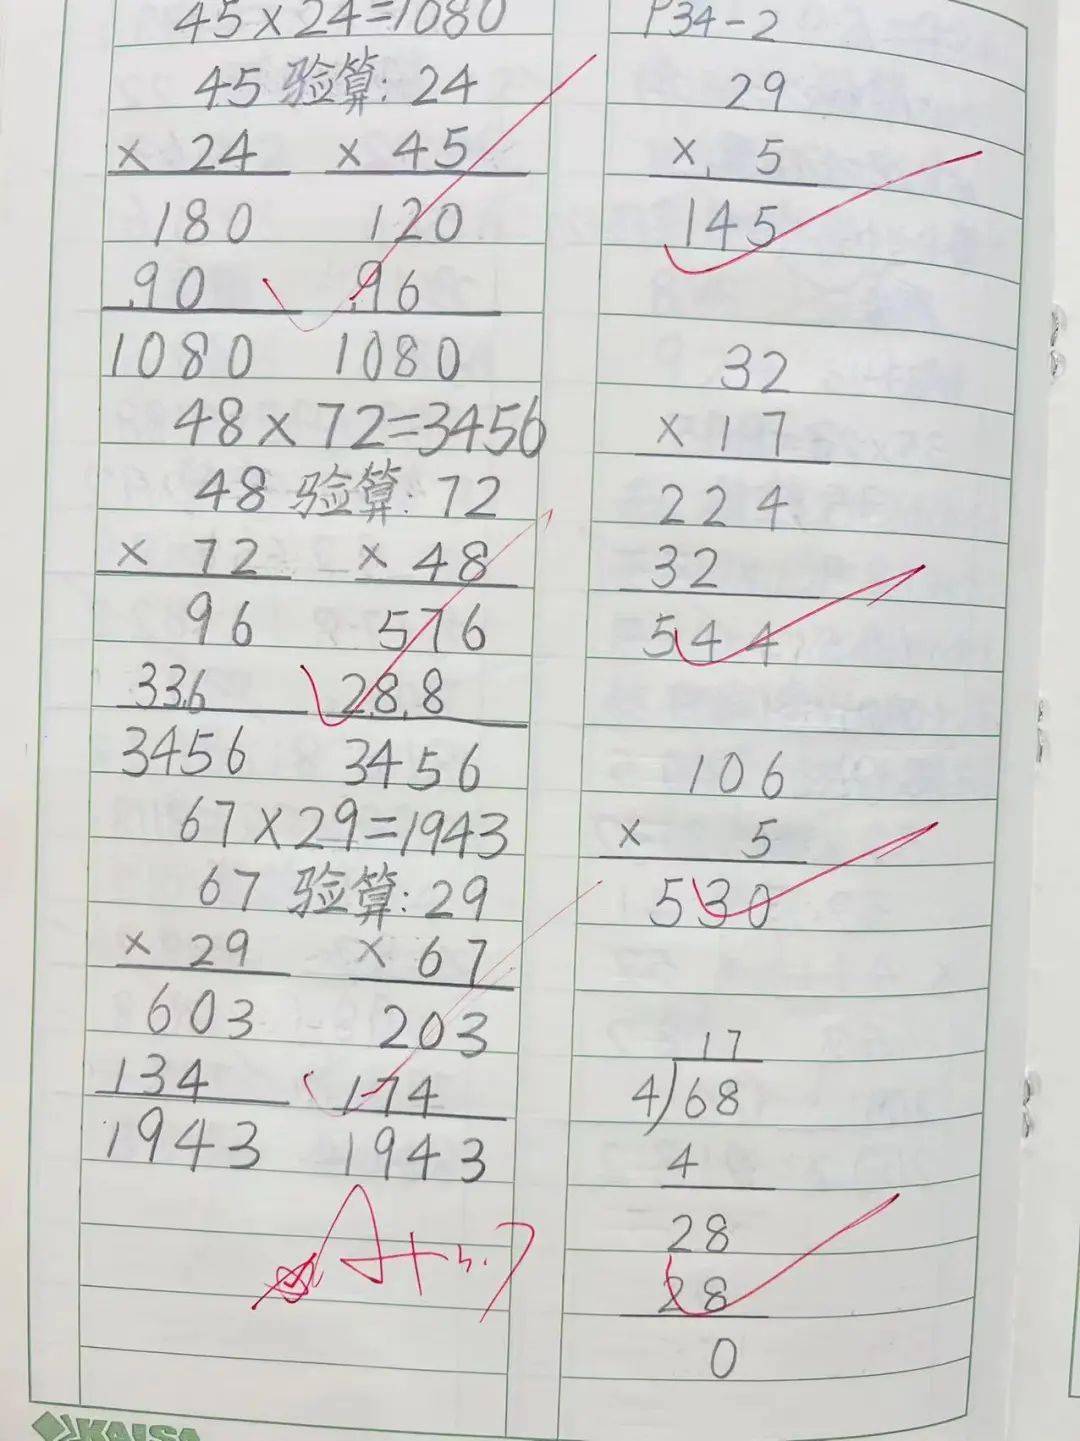 三年级学生的数学作业书写规范,字迹工整认真,页面干净整齐,教师及时